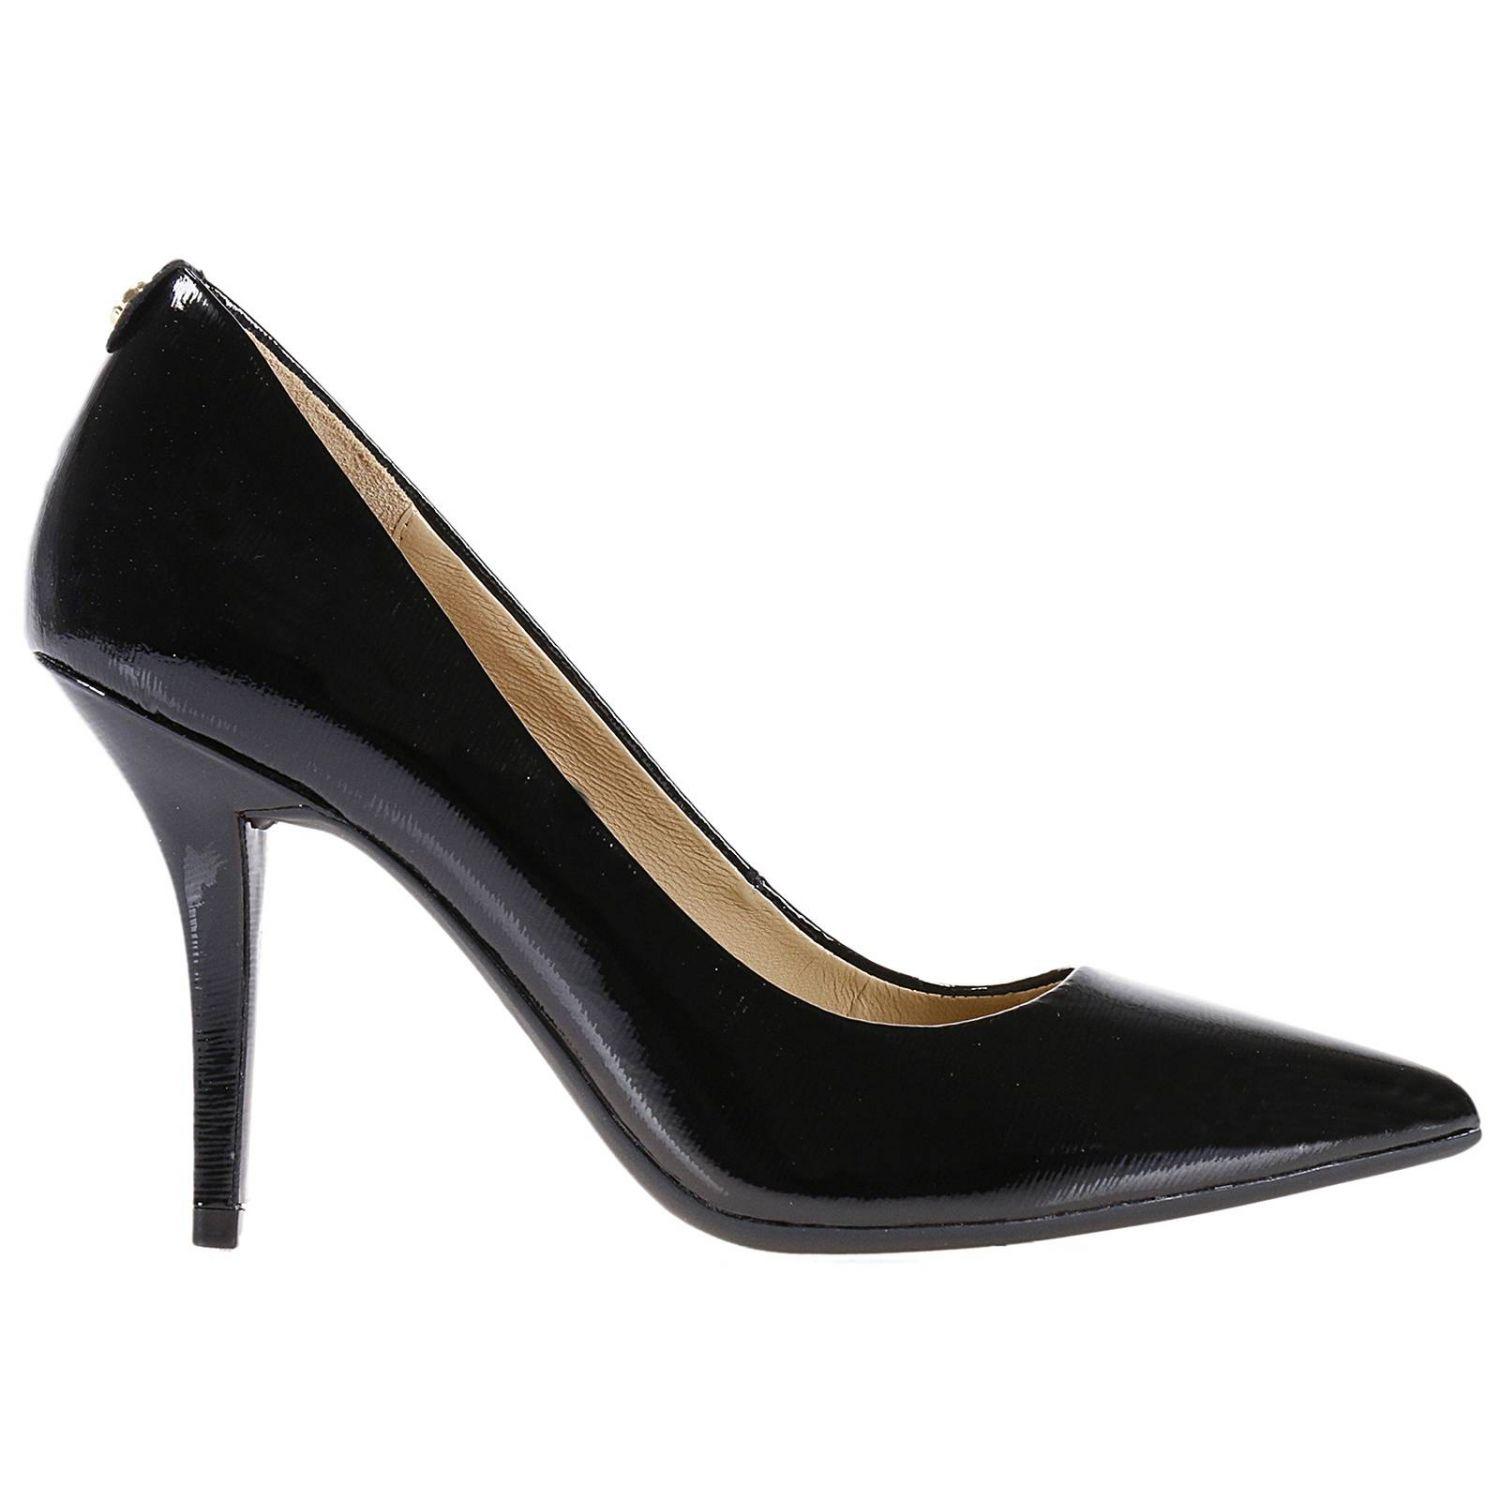 MICHAEL Michael Kors Pumps Shoes Women in Black - Lyst